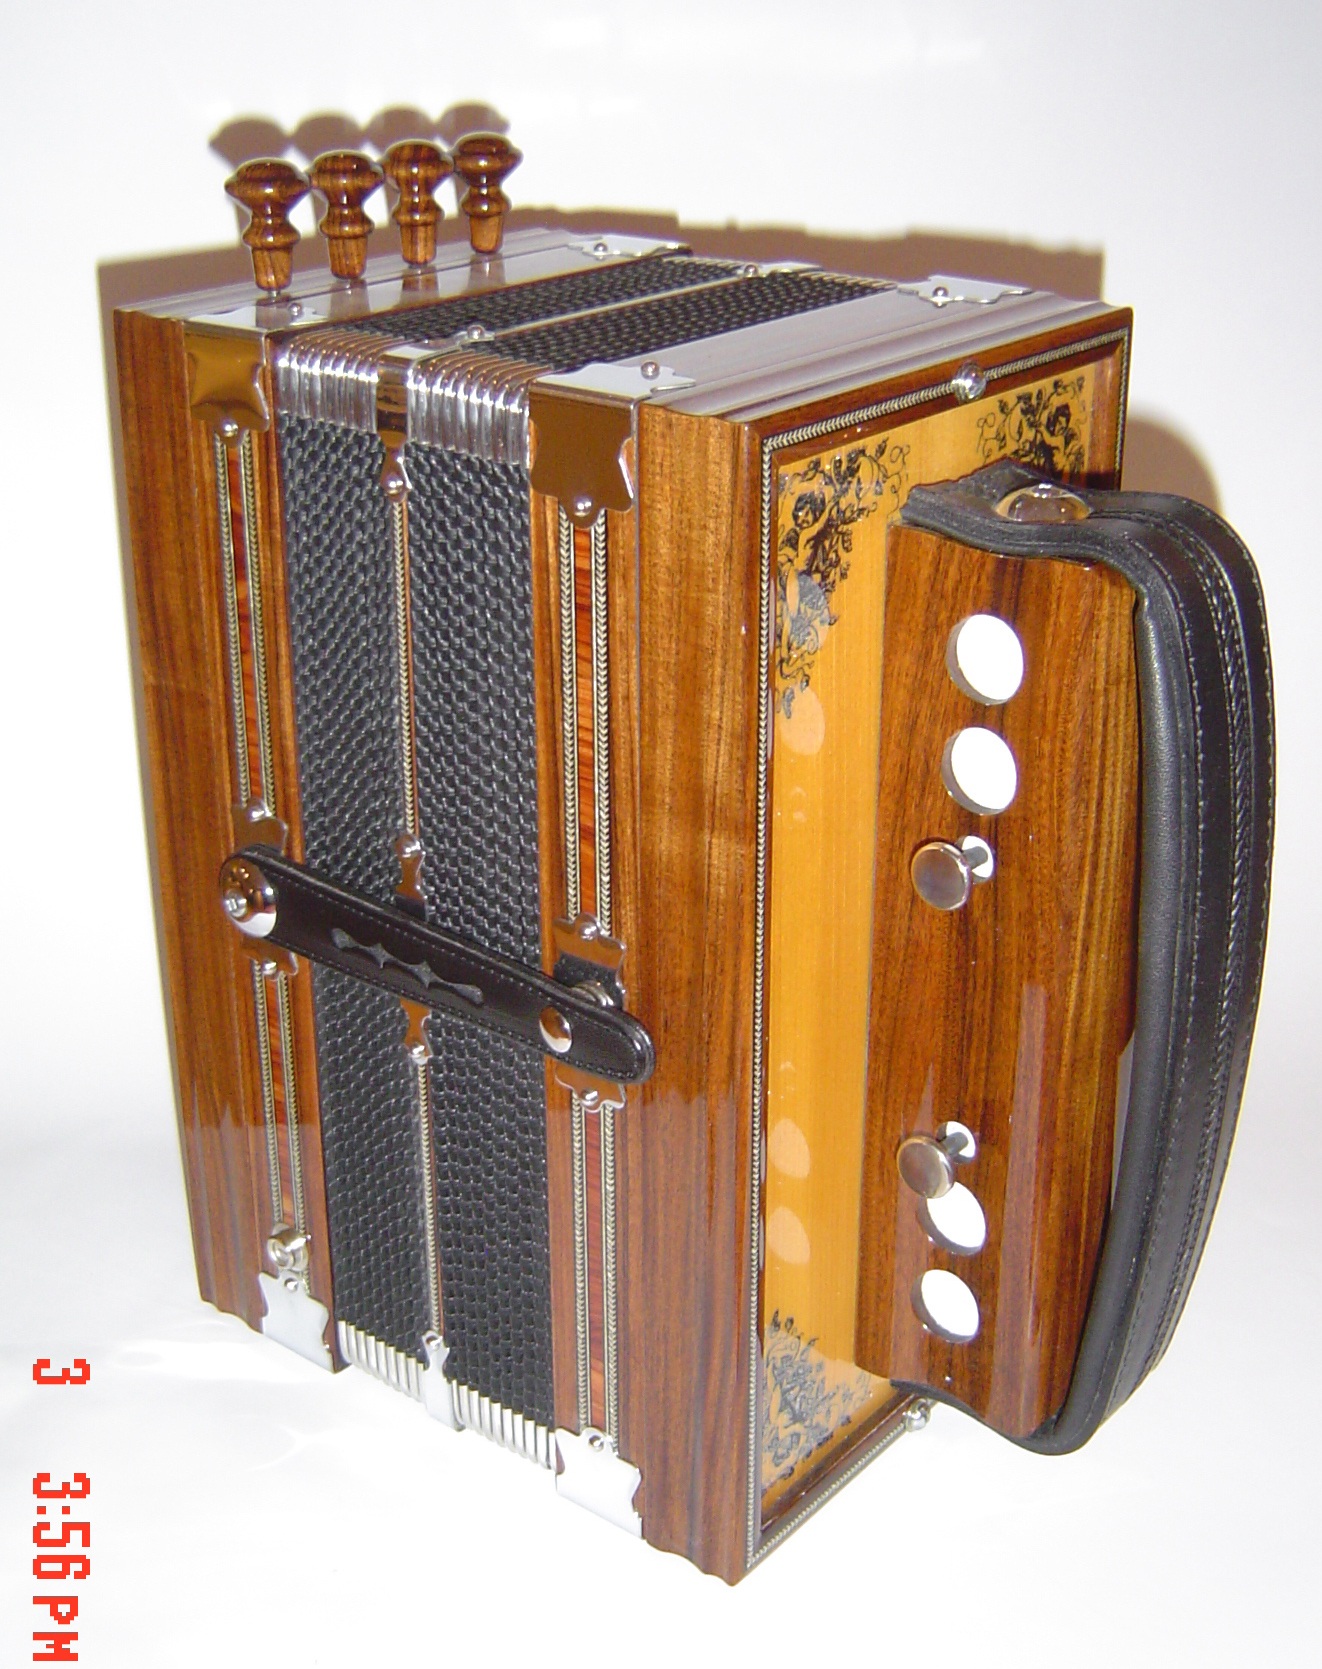 Différencier les types d'instruments - Accordéons - La boîte d'accordéon